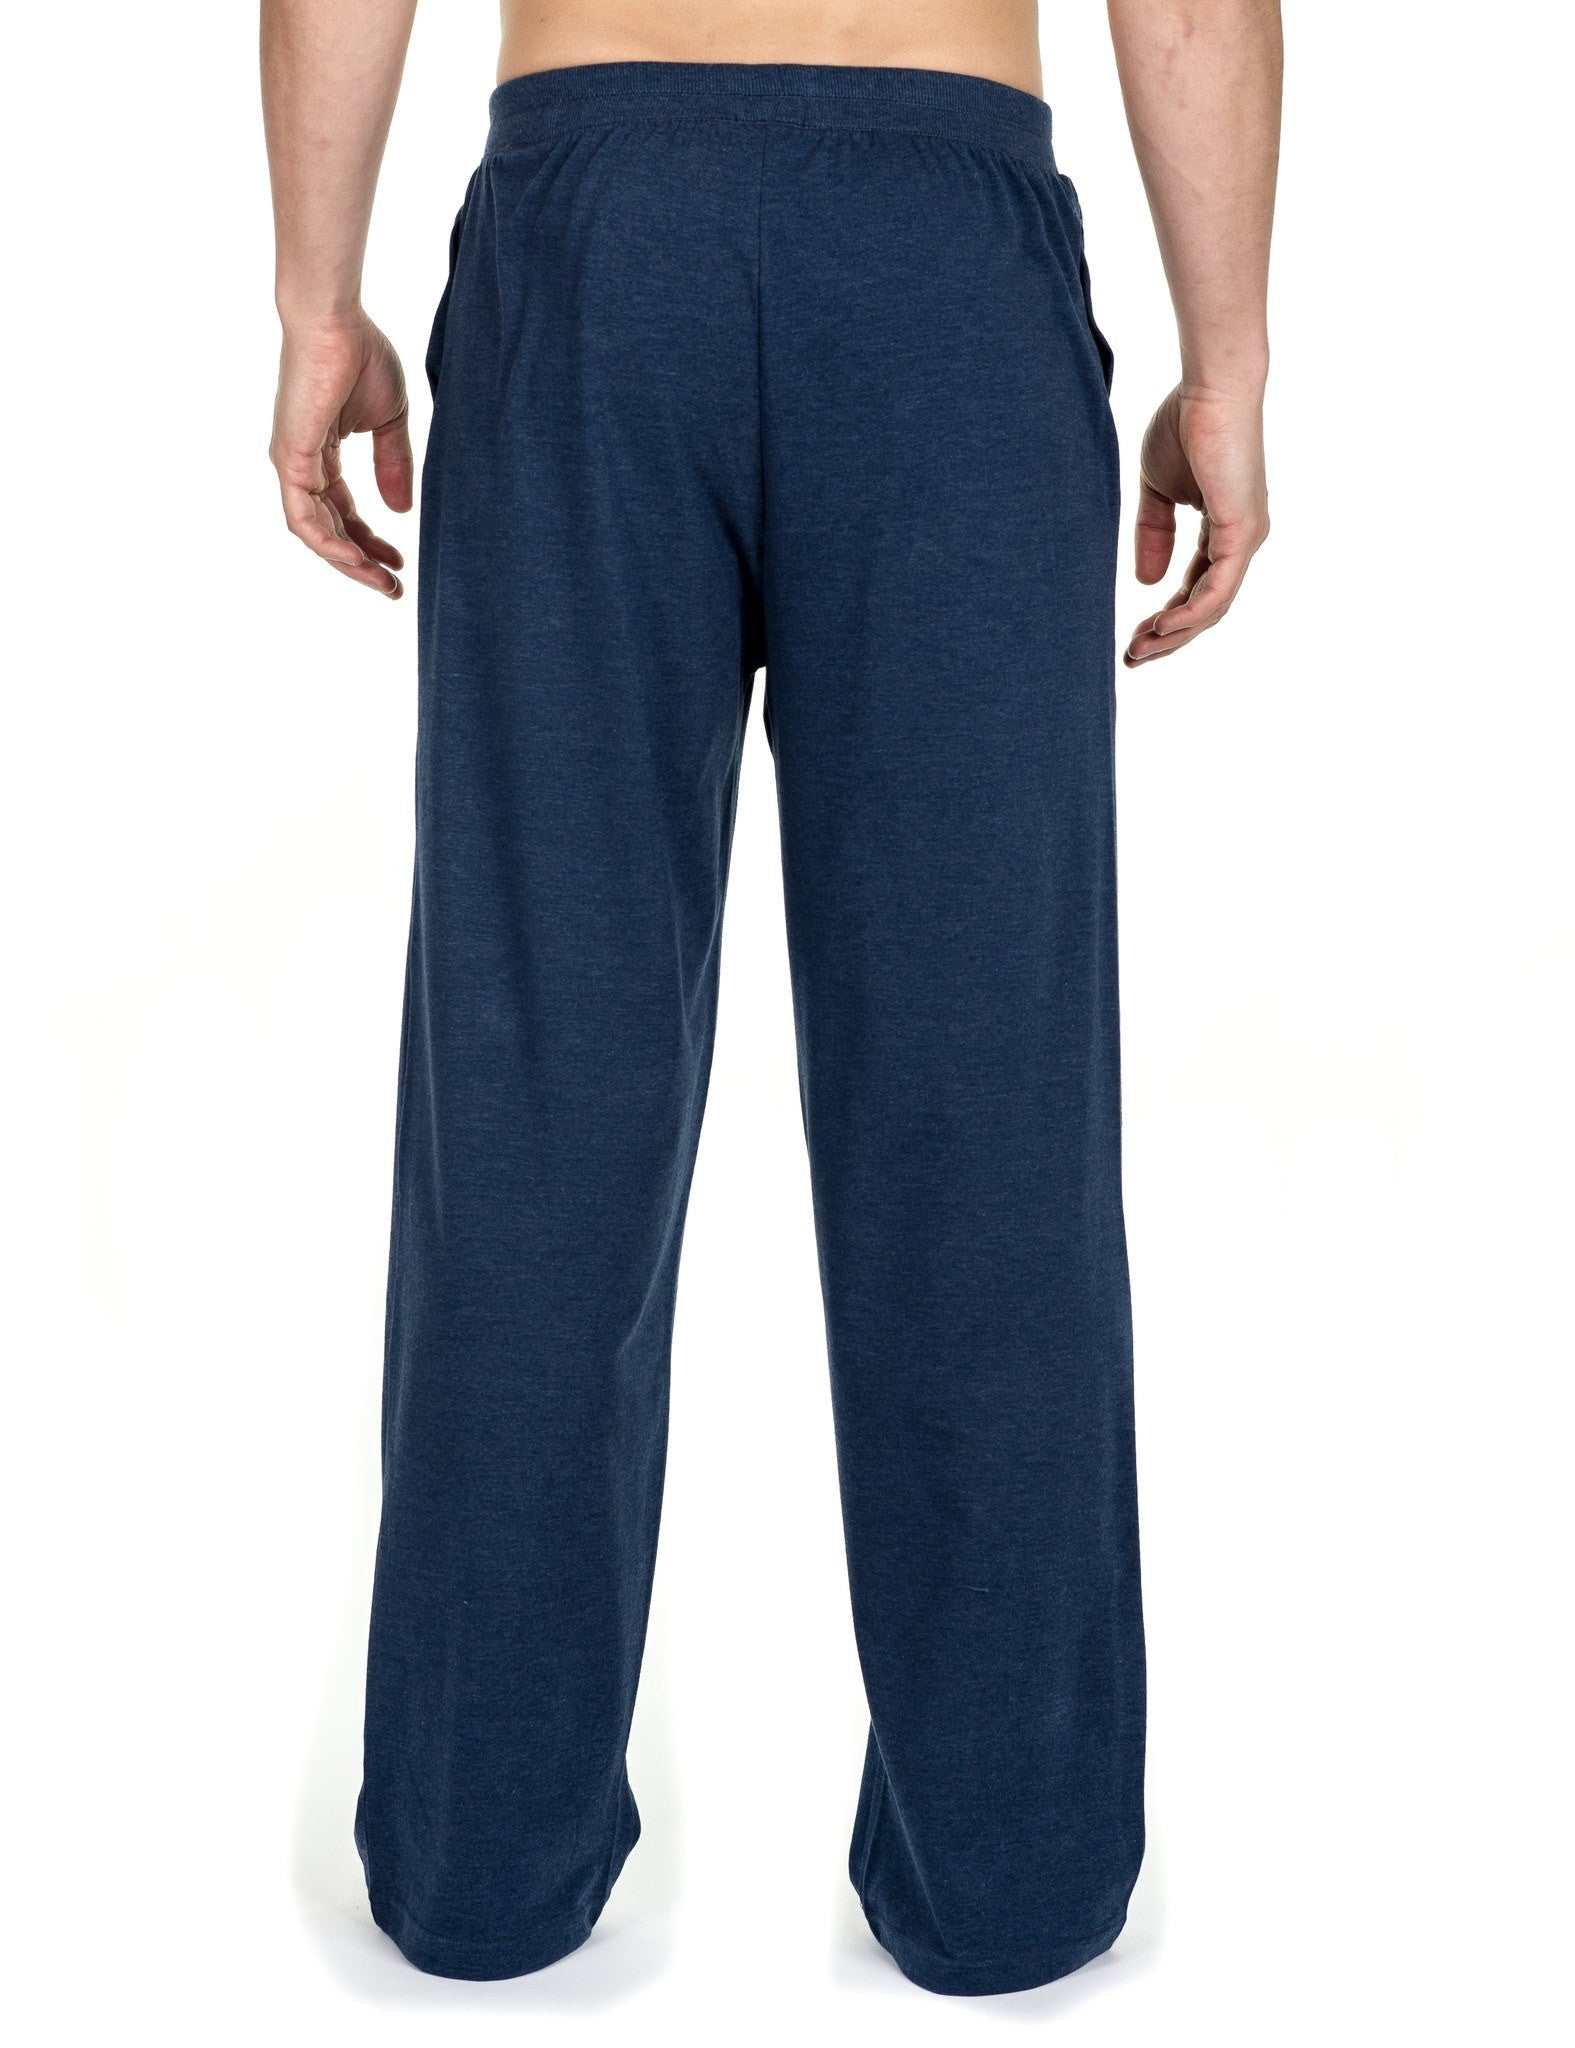 Noble Mount Men's 2-Pack Premium Knit Lounge Pants